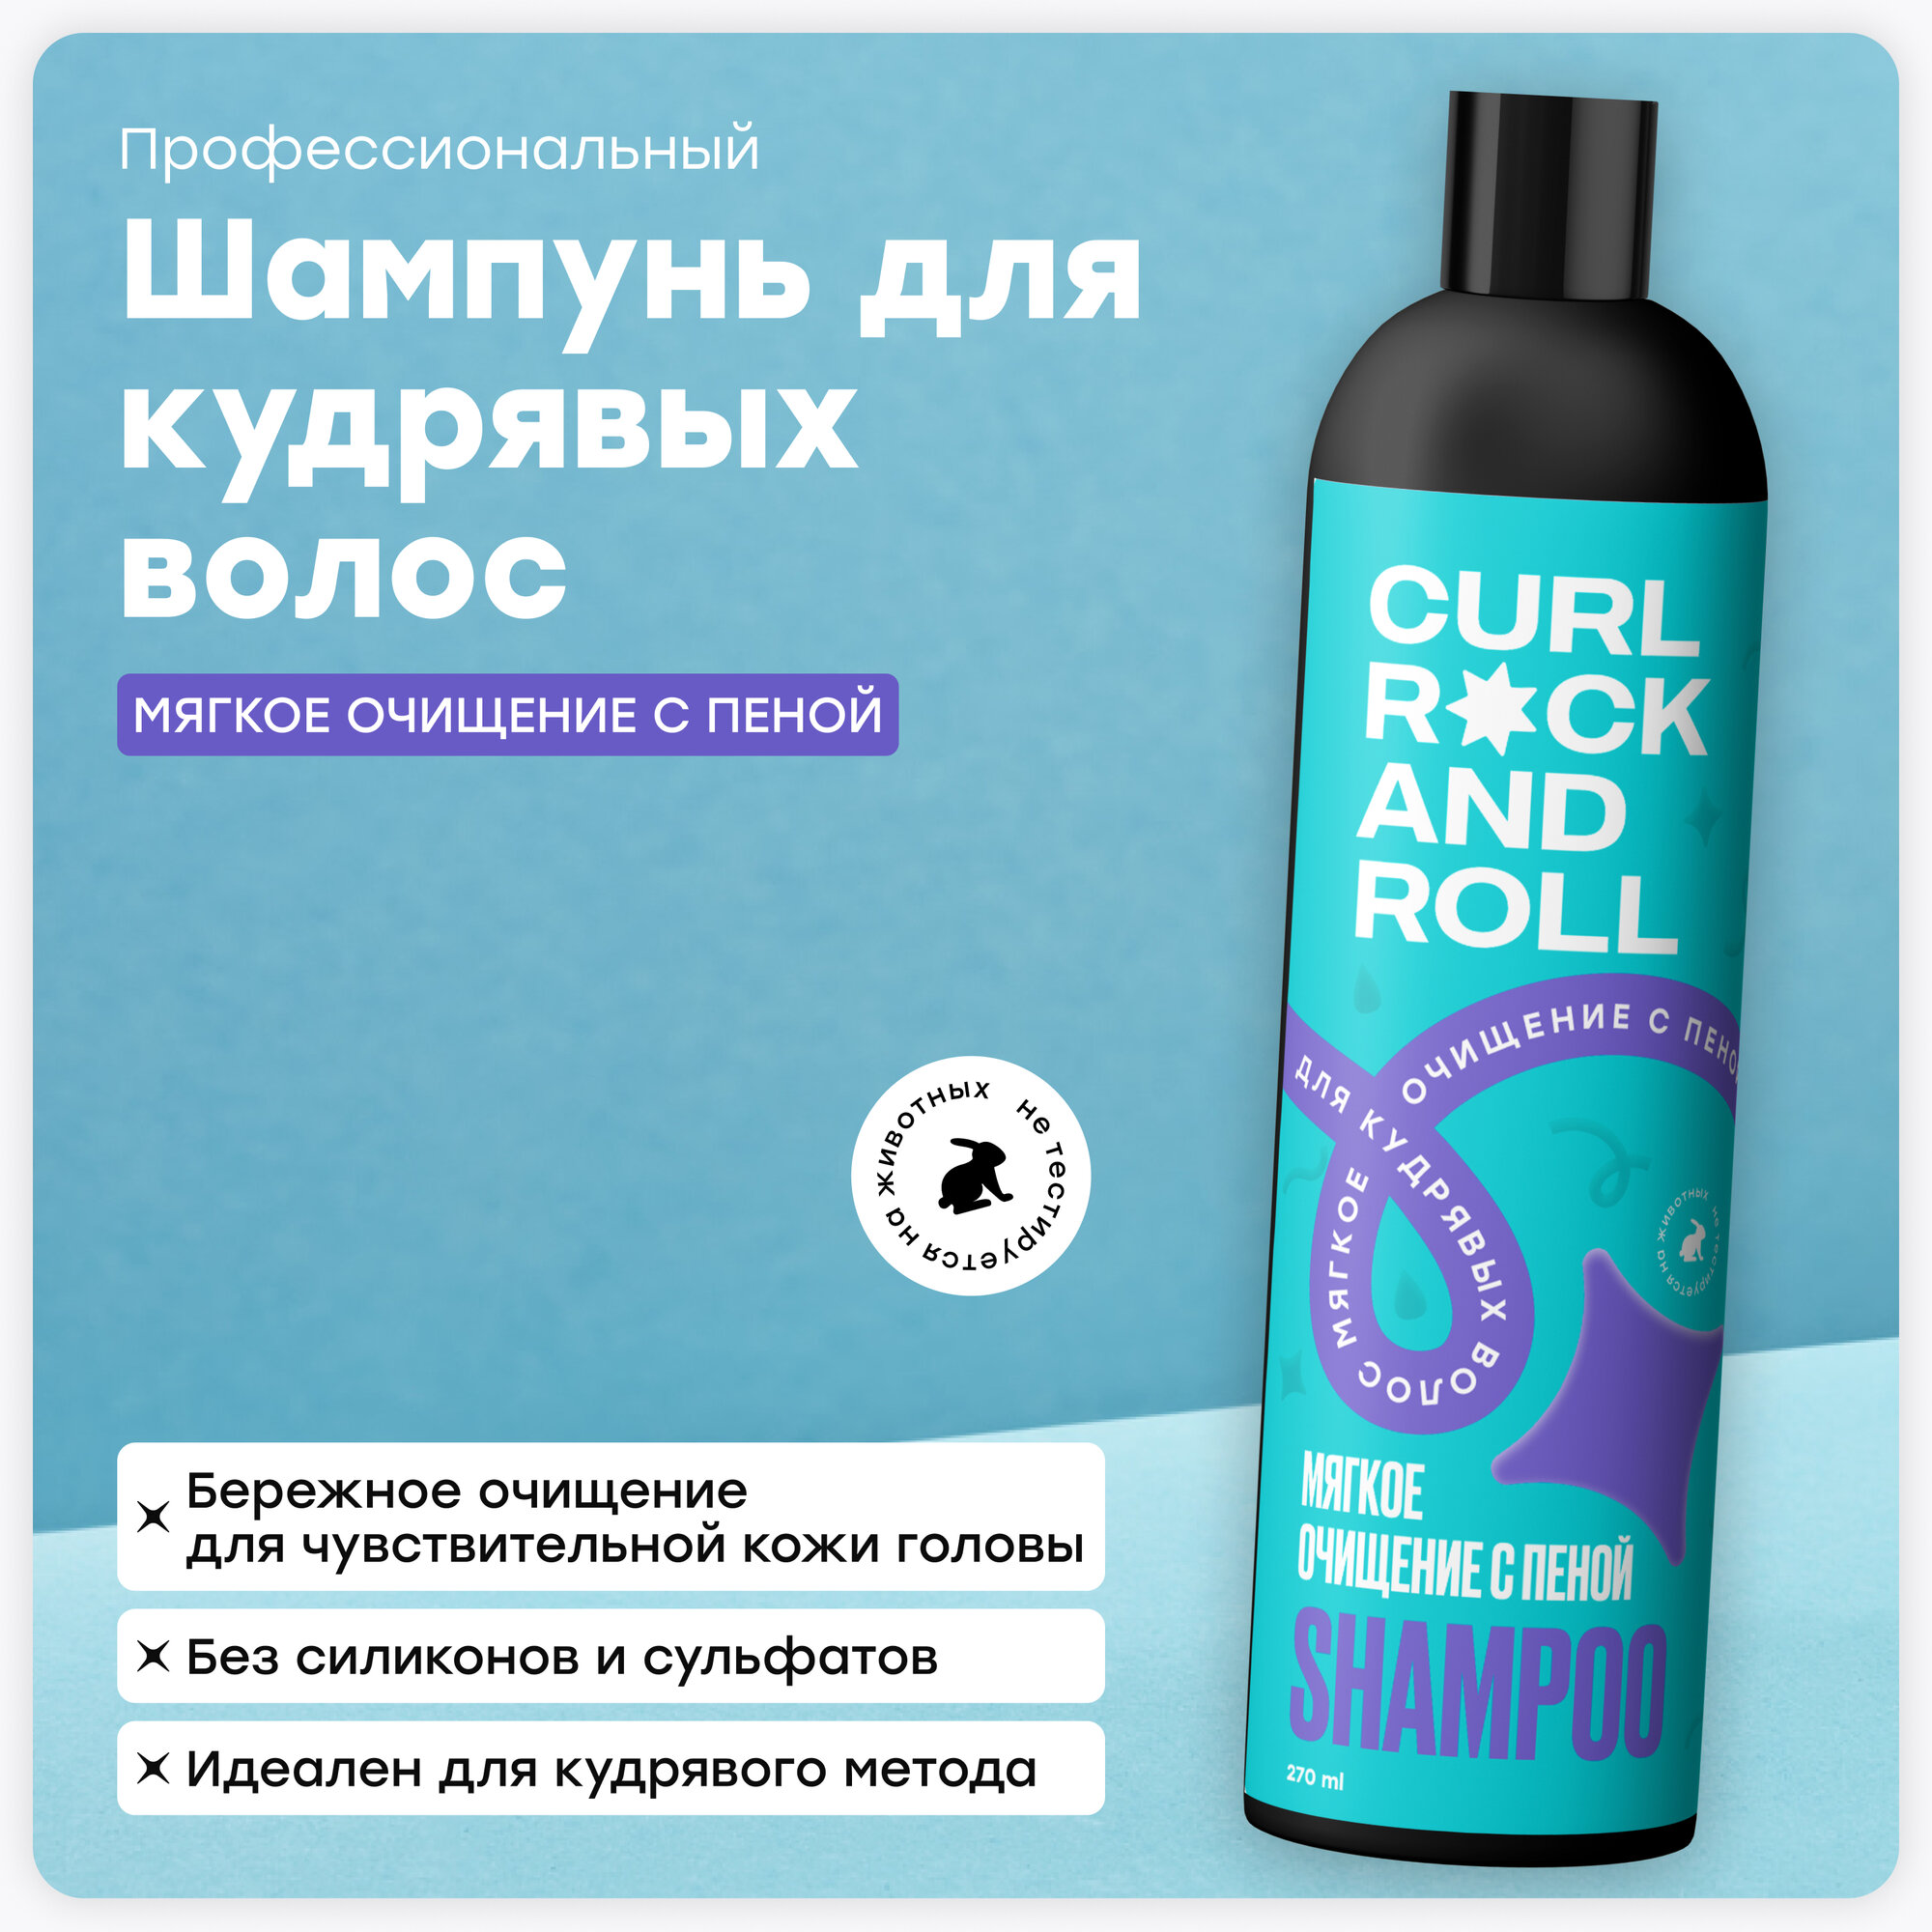 Шампунь CURL ROCK AND ROLL для кудрявых волос "Мягкое очищение с пеной" для чувствительной кожи головы